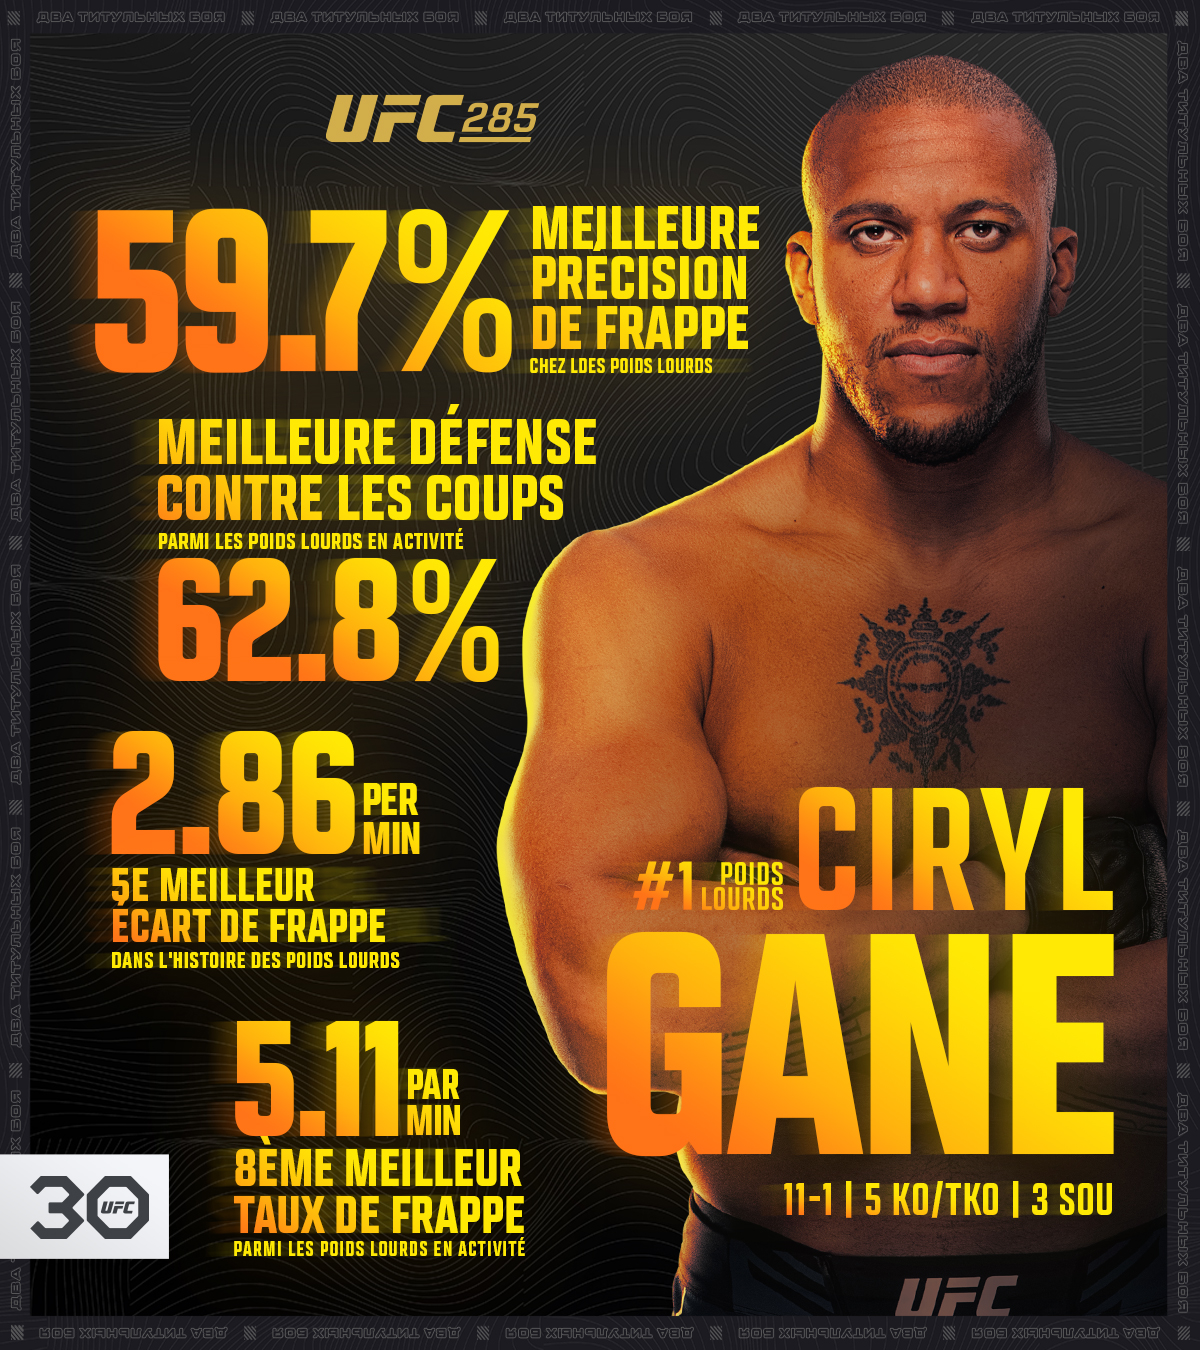 UFC 285 - Ciryl Gane